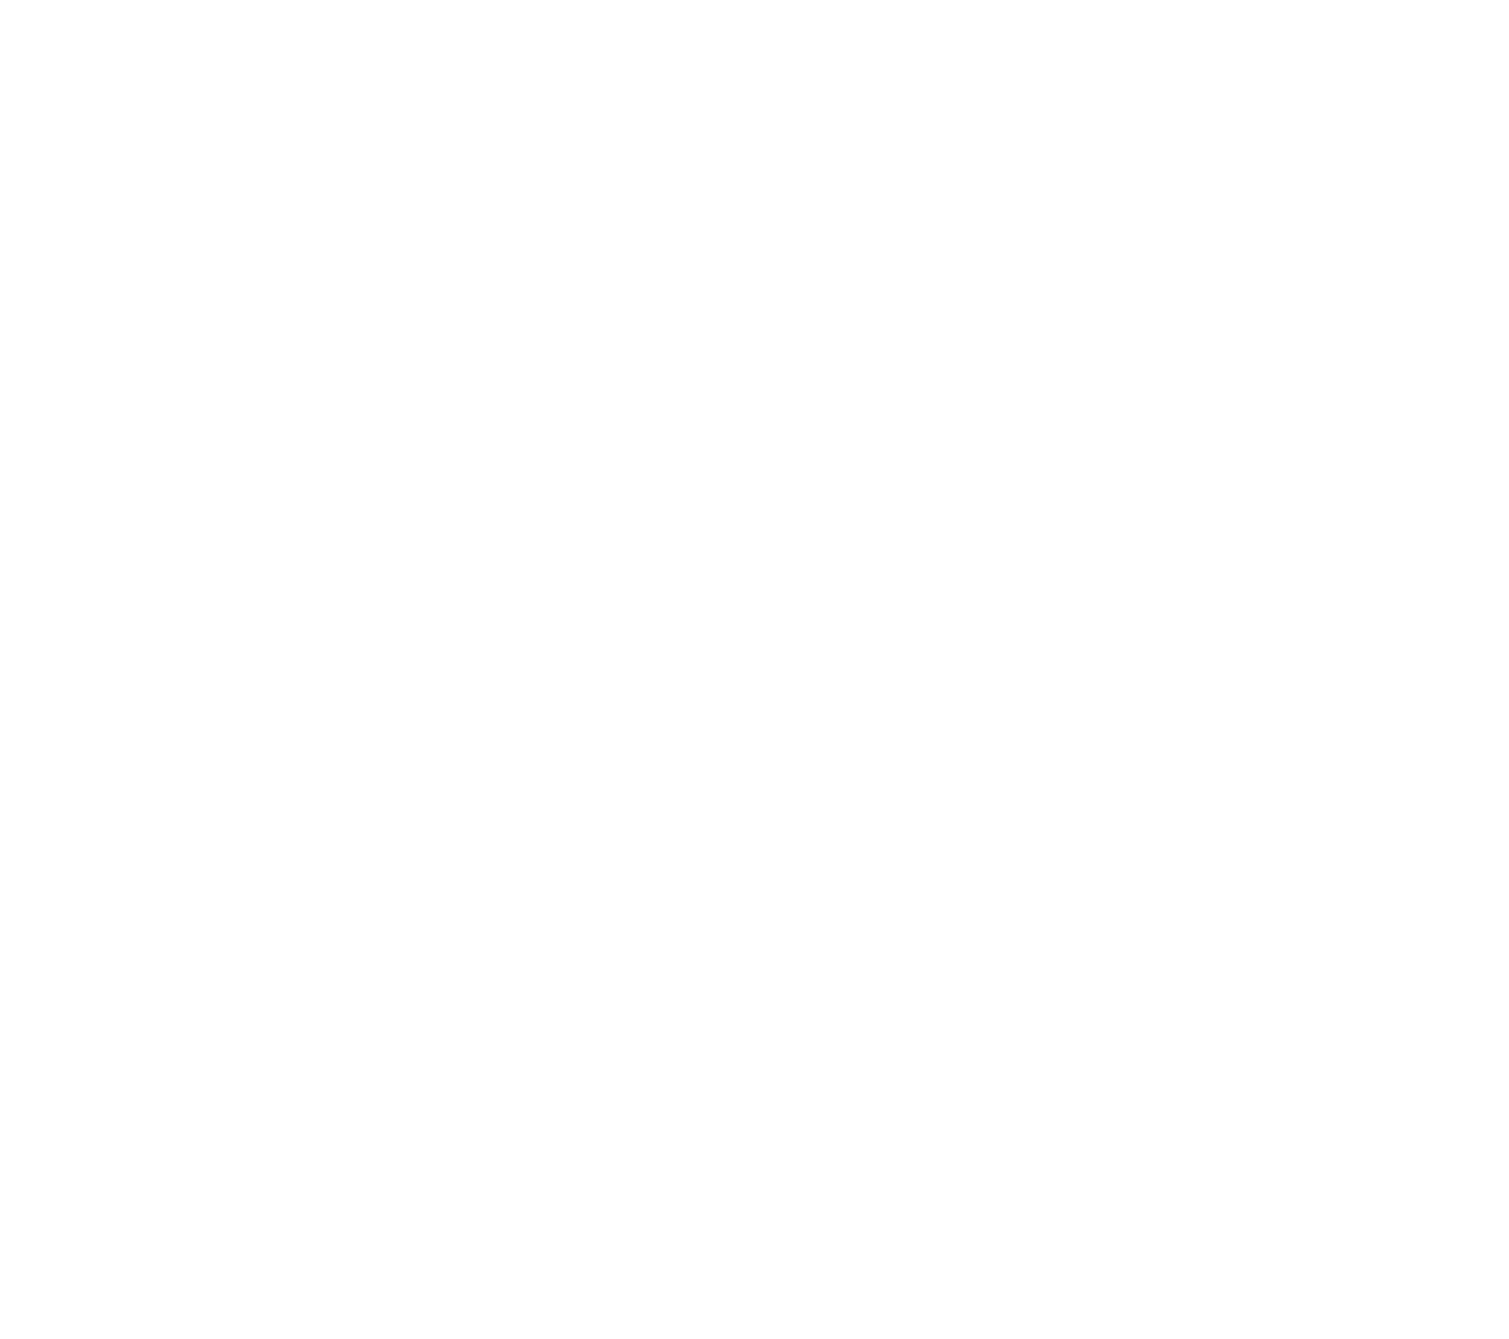 Dexco logo for dark backgrounds (transparent PNG)